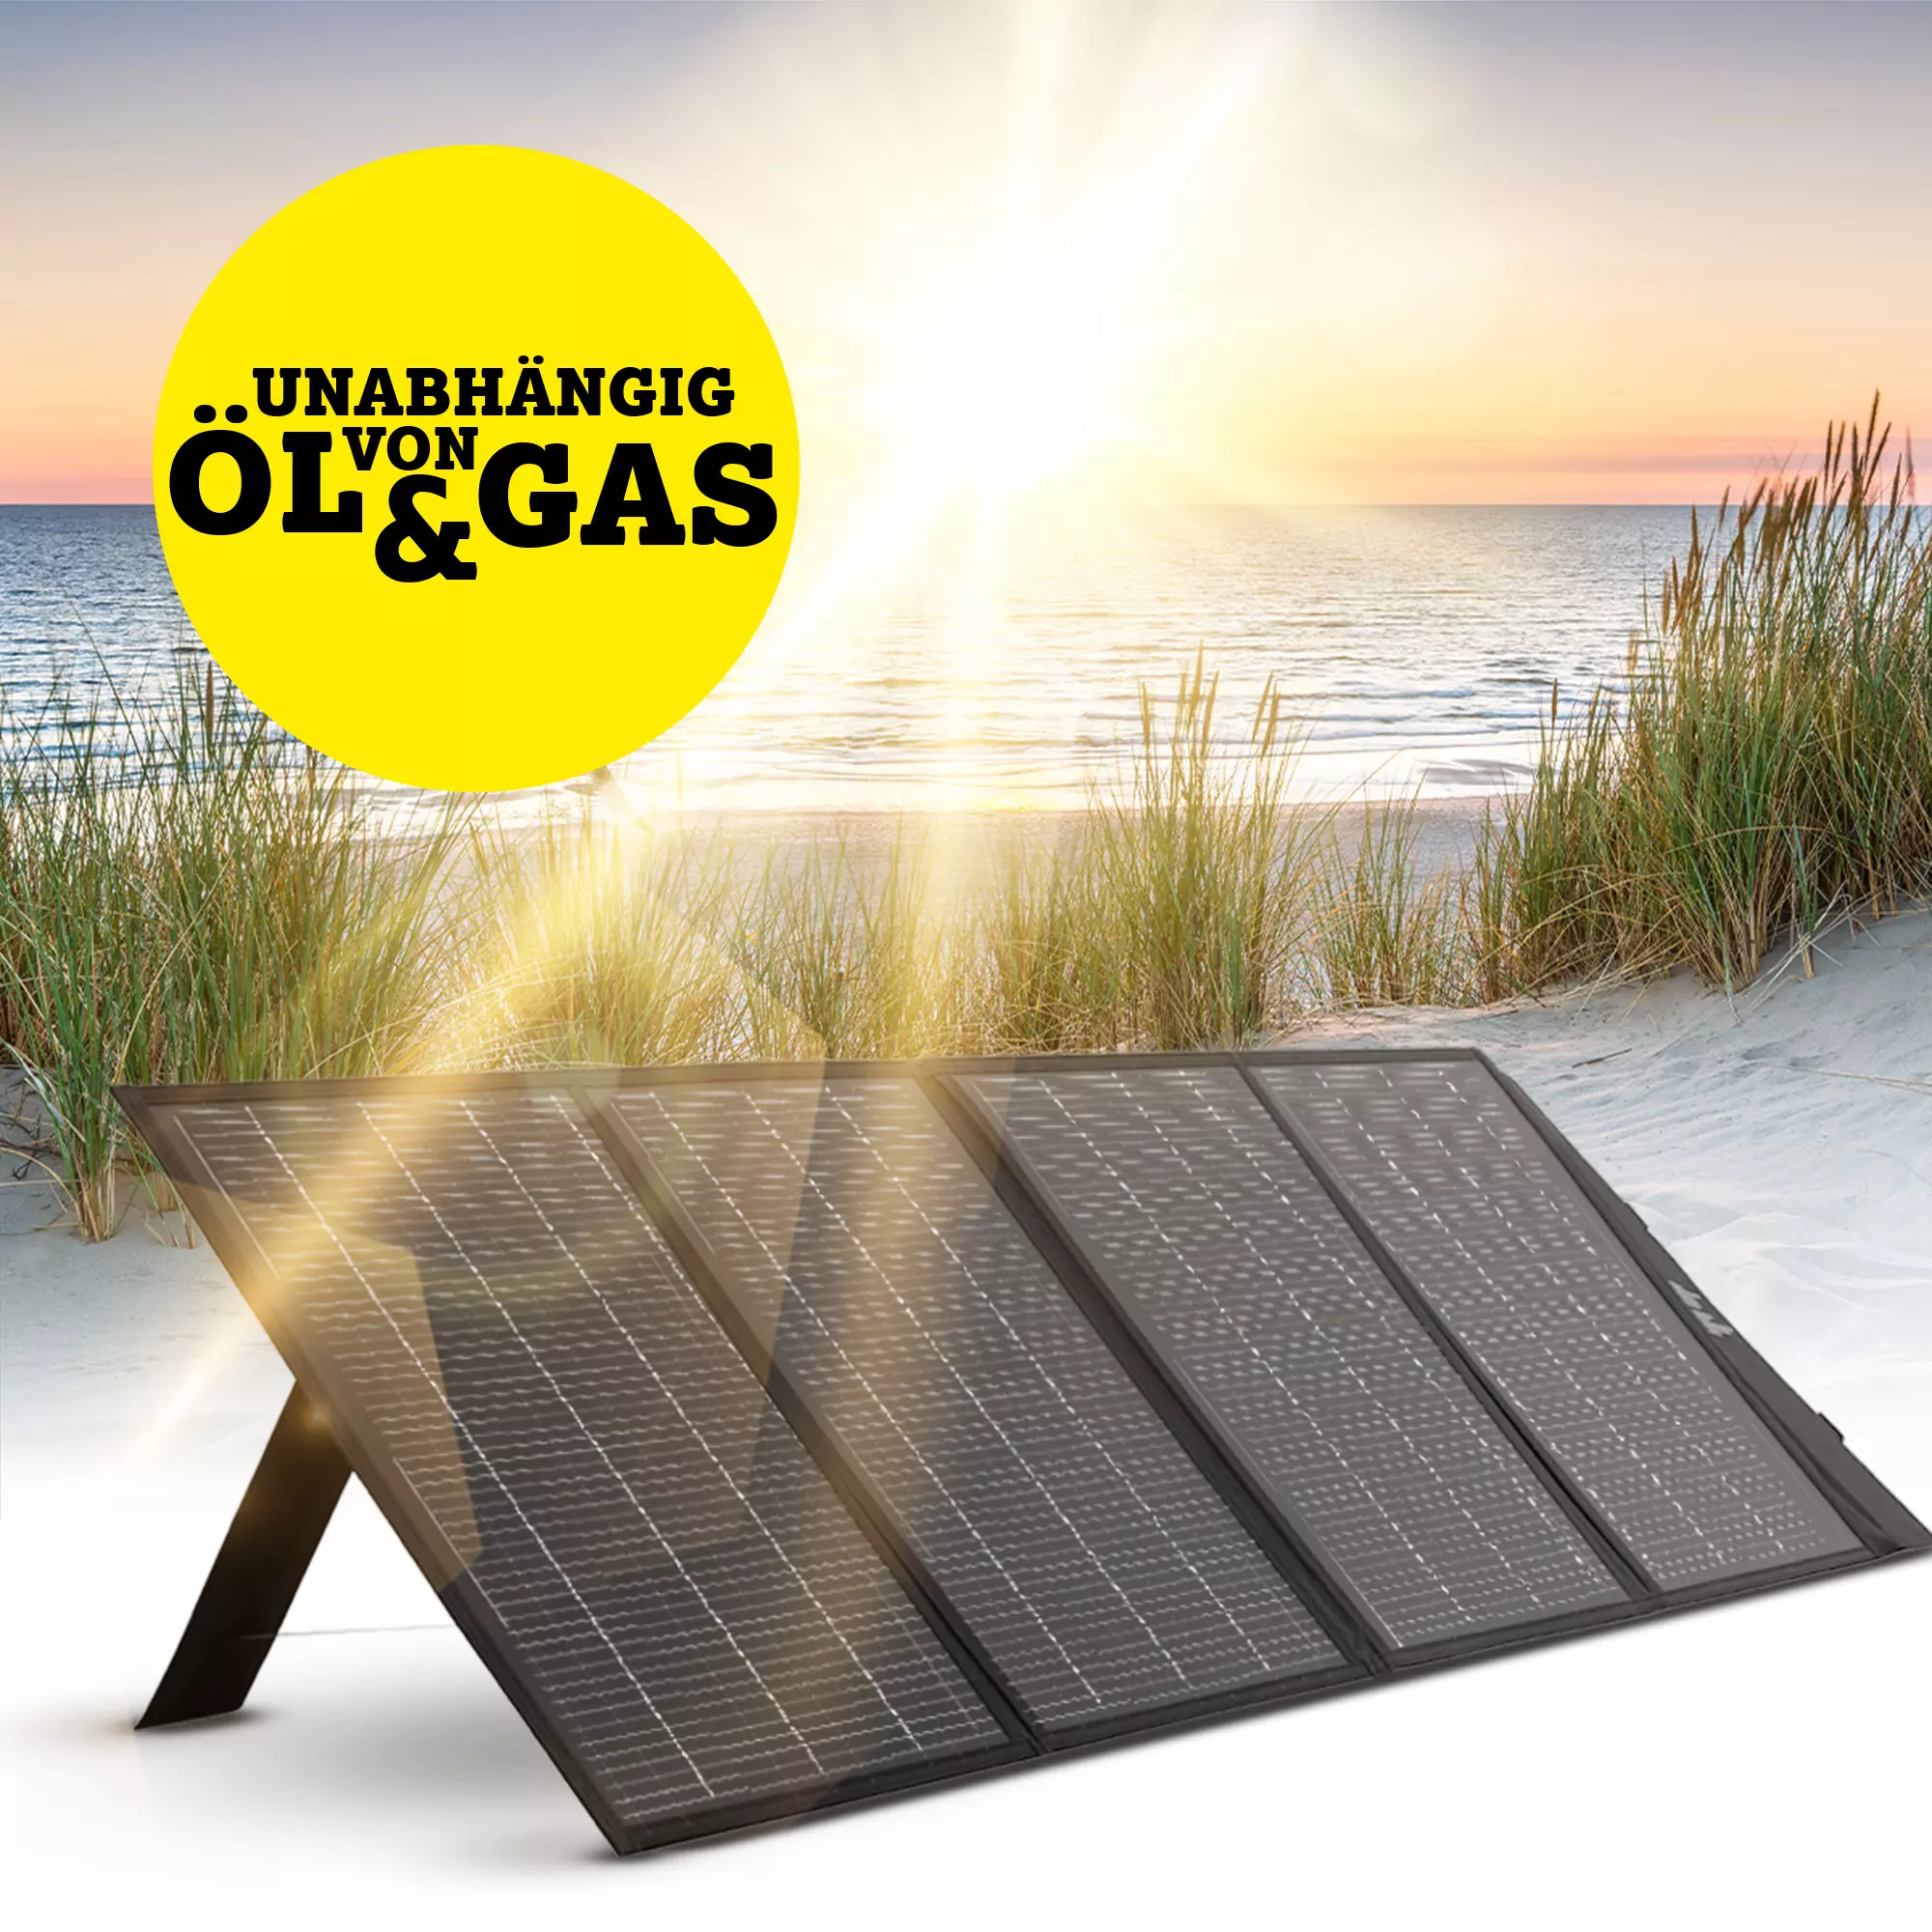 Das aufgefaltete Solarpanel am Strand